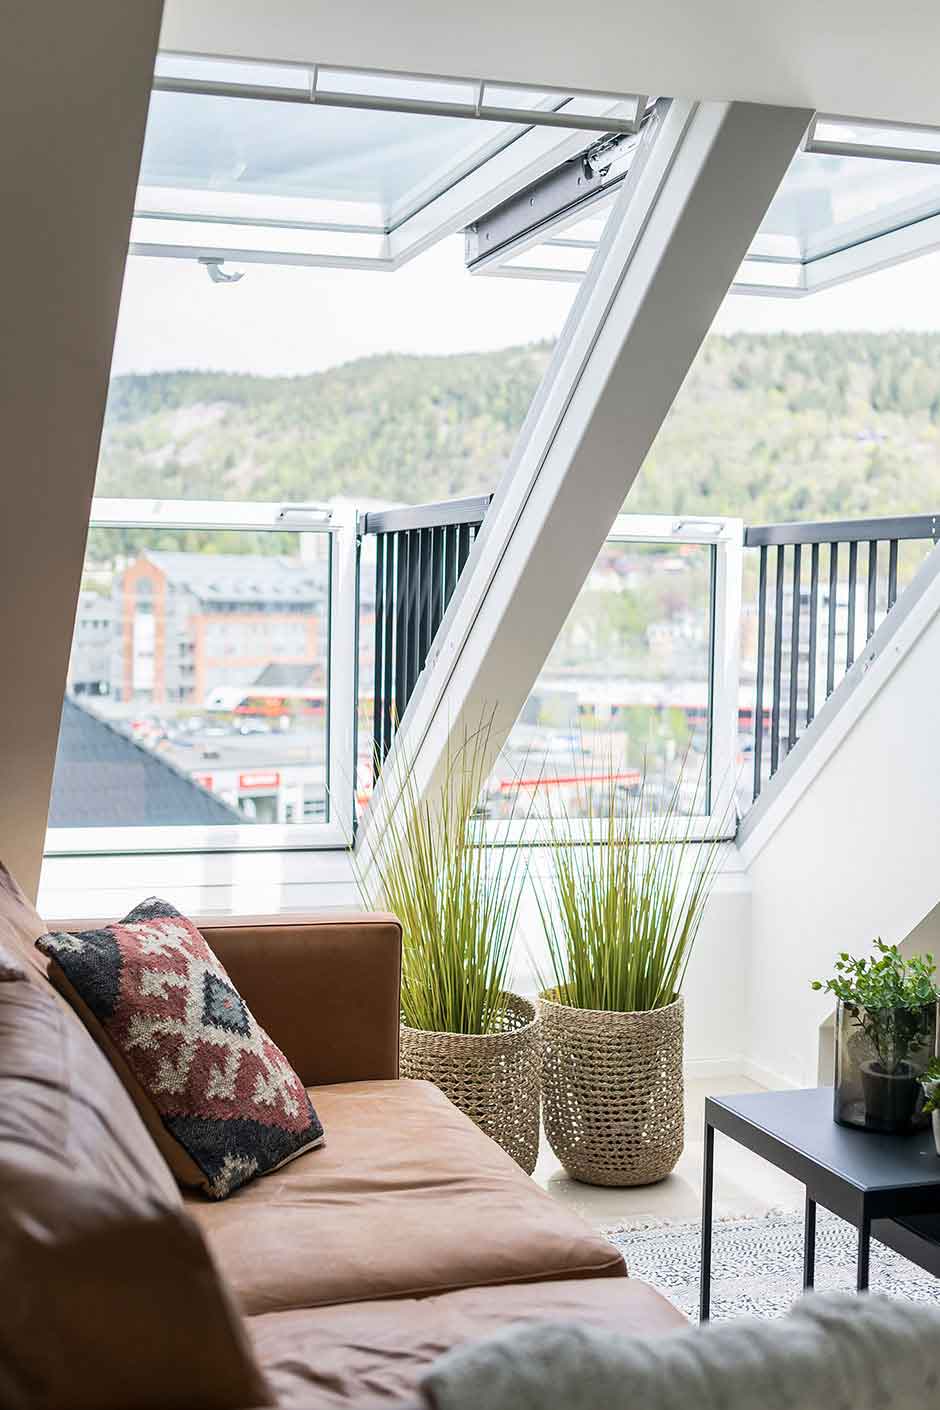 Modernes Loft mit VELUX Dachflächenfenster, Ledersofa, Pflanzen und städtischem Ausblick.